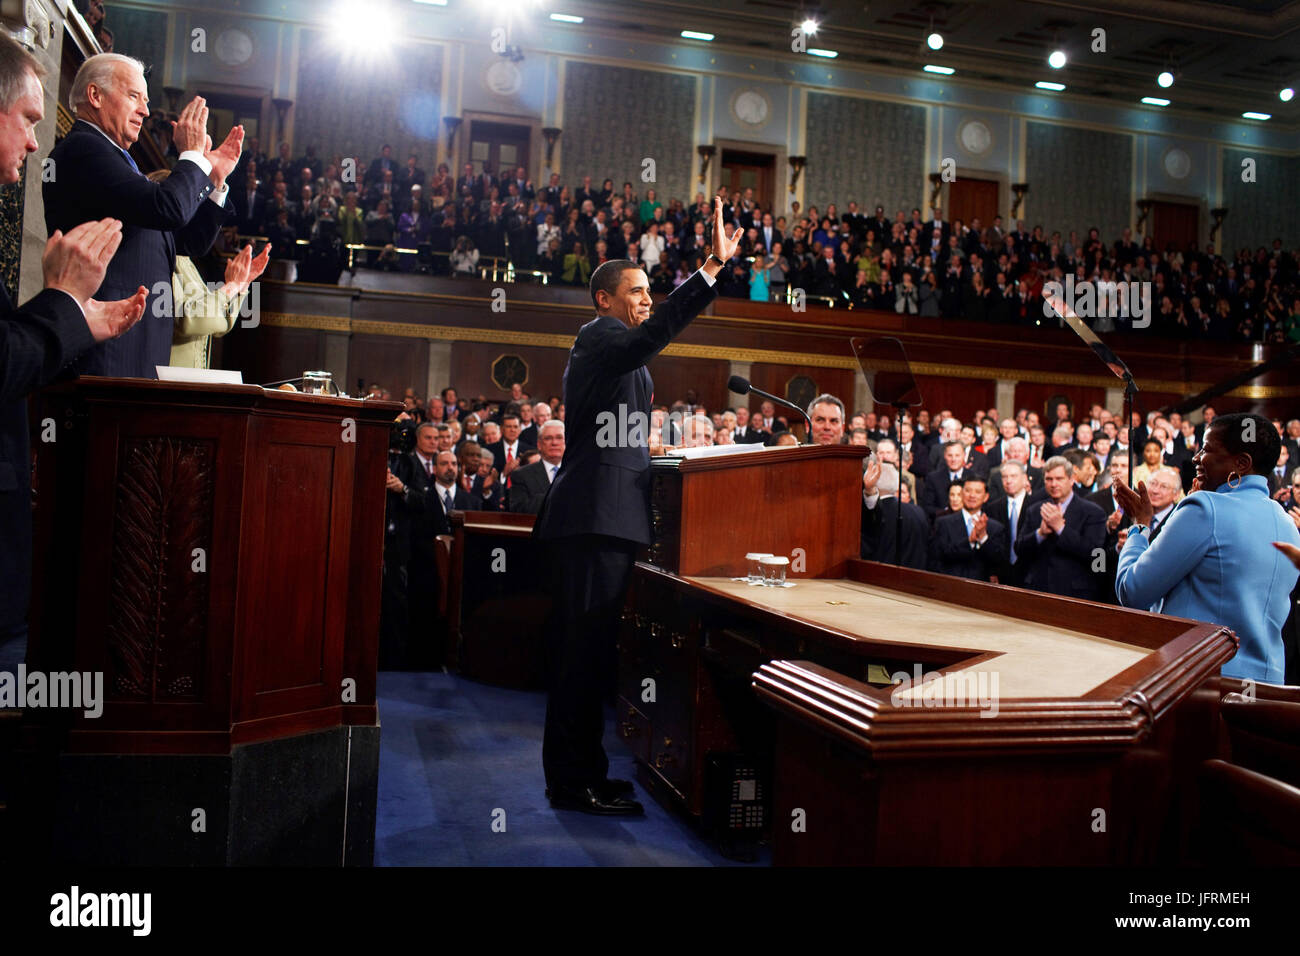 Le président Barack Obama traite de la session conjointe du Congrès des États-Unis à la capitale américaine, Washington, D.C. 24/02/09 Photo Officiel de la Maison Blanche par Pete Souza Banque D'Images